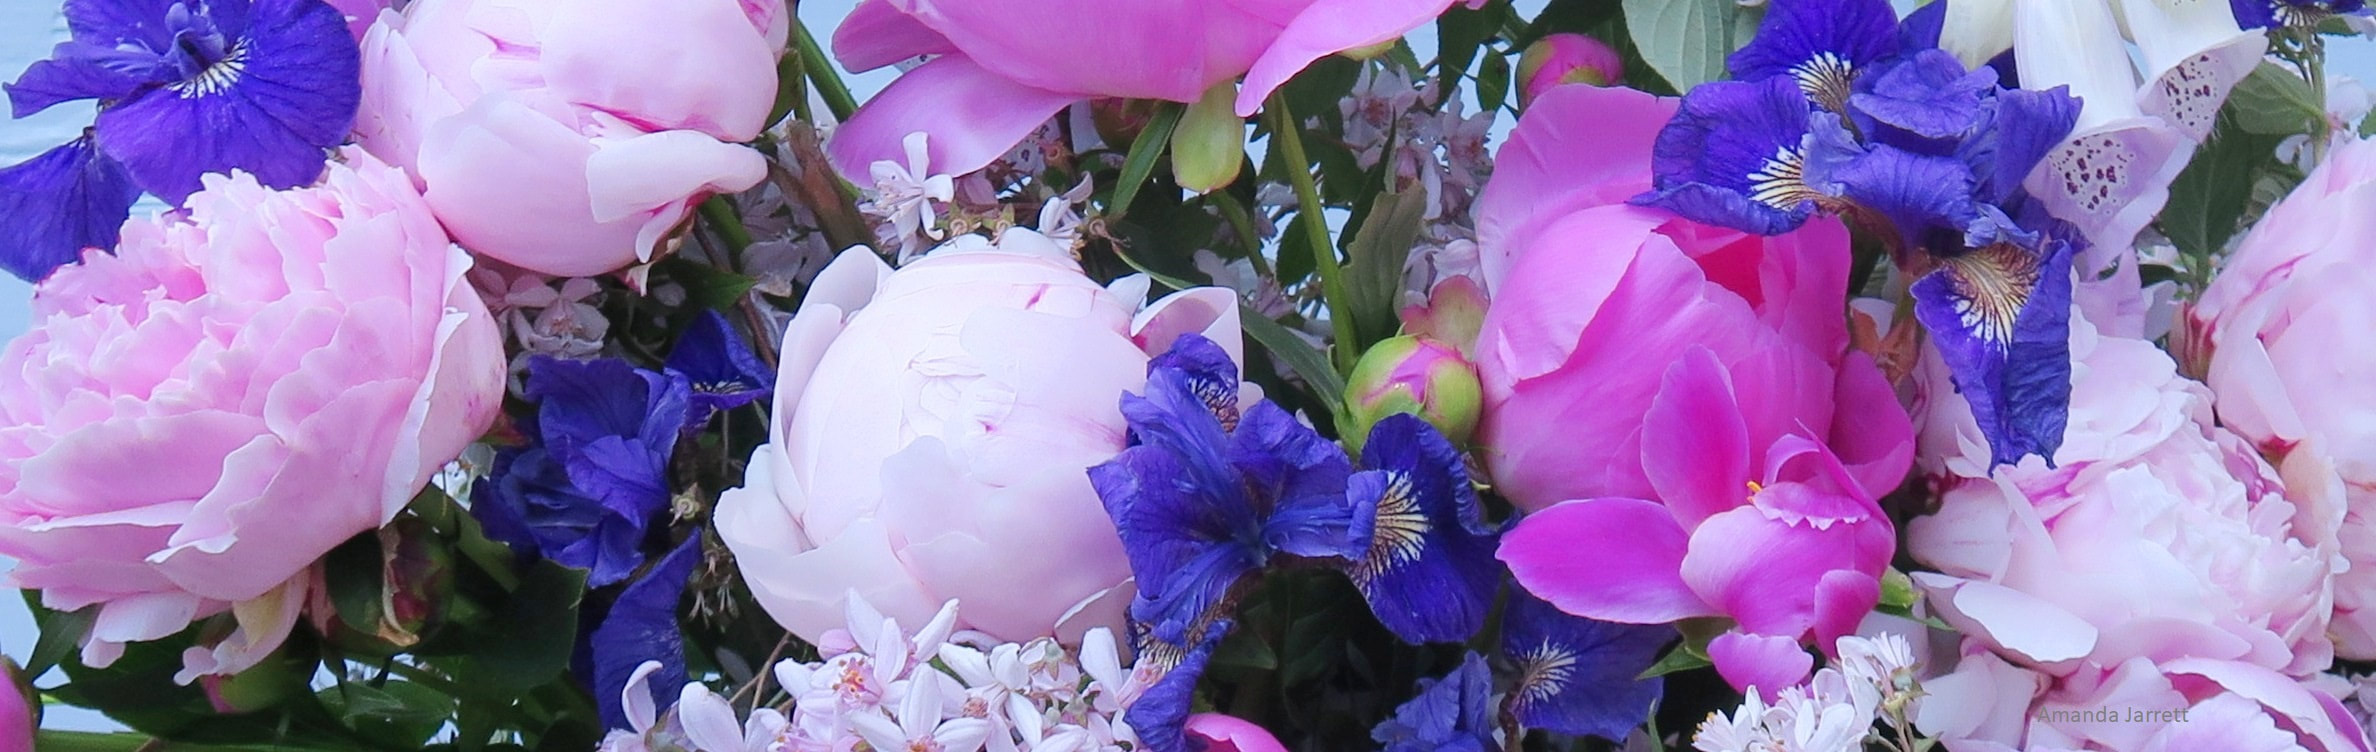 June flowers,peony,iris,The Garden Website.com,Amanda Jarrett,Amanda’s Garden Consulting,garden website